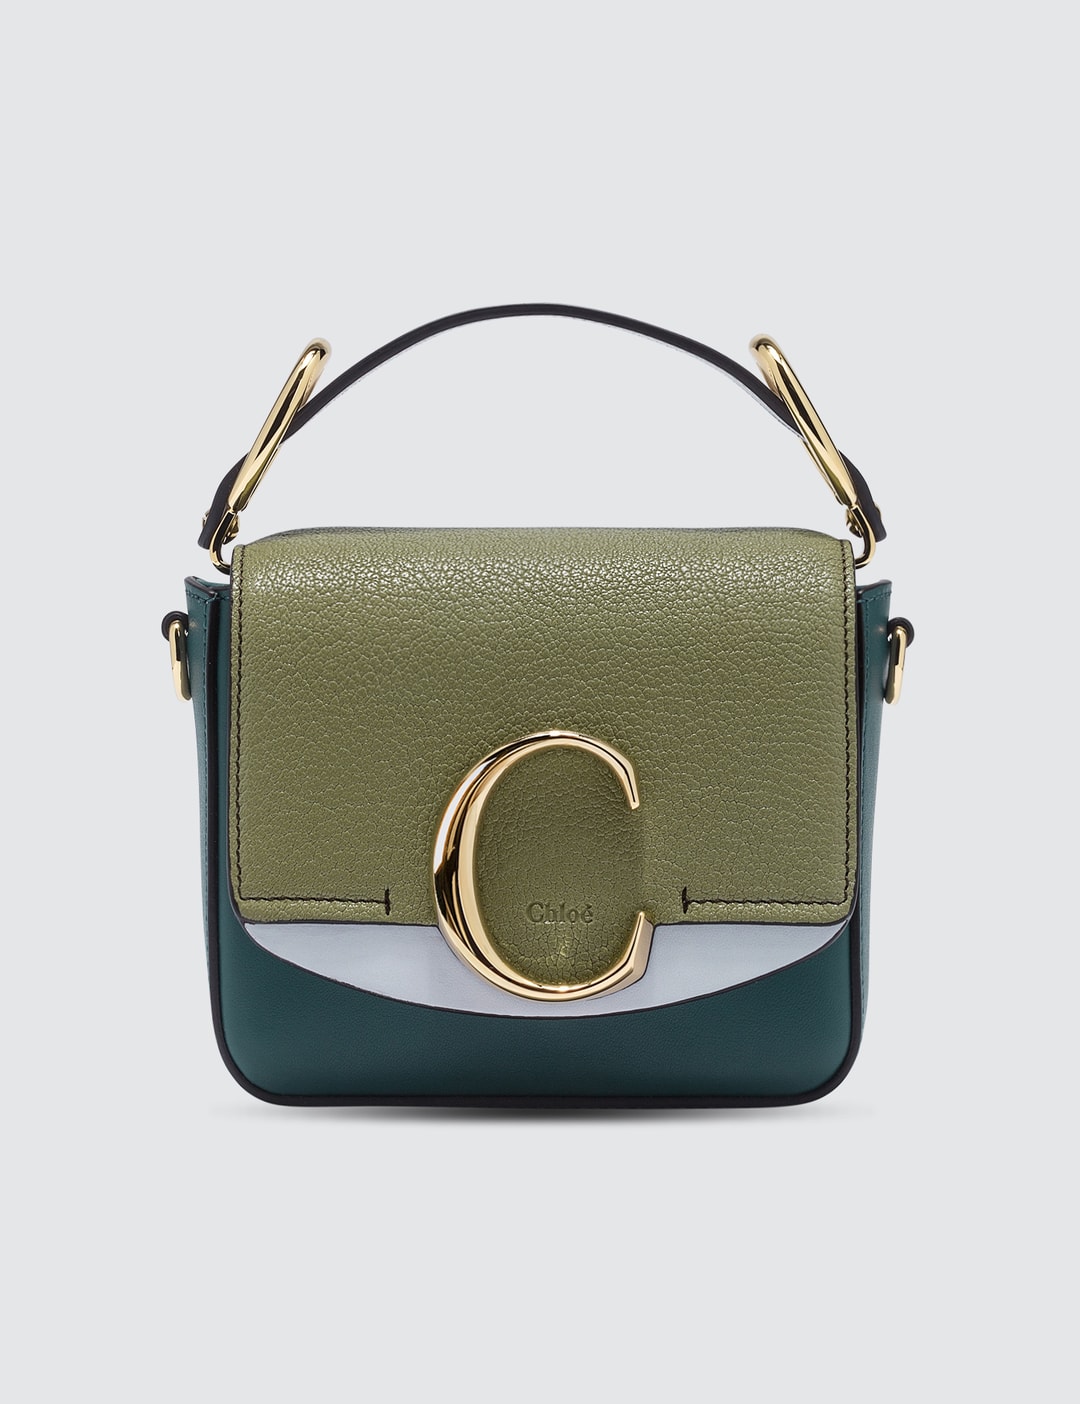 Chloé Mini Chloé C Bag Hbx Hypebeast 為您搜羅全球潮流時尚品牌